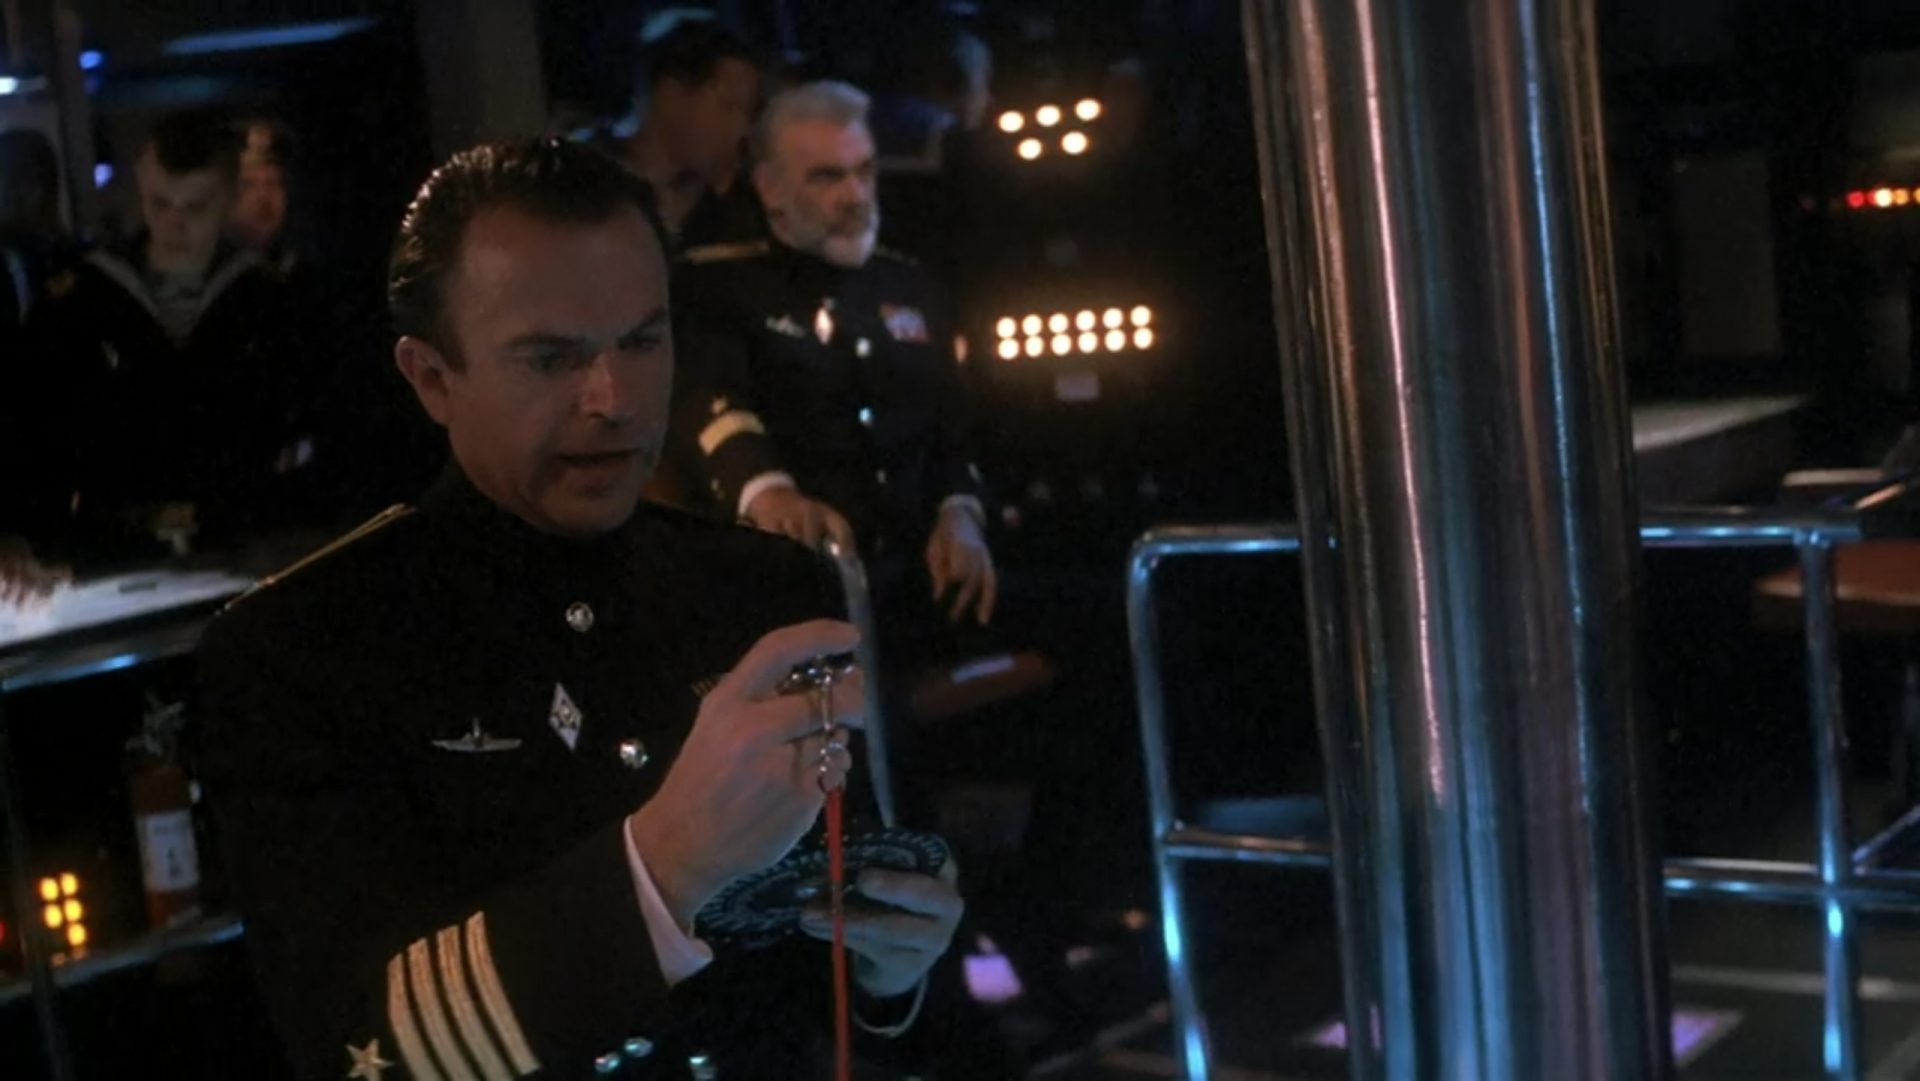 Angespannte Atmosphäre in der Kommandozentrale des sowjetischen Atom-U-Bootes „Roter Oktober“, im Vordergrund Sam Neill als Erster Offizier beim Blick auf die Stoppuhr, im Hintergrund Sean Connery als Kommandant.